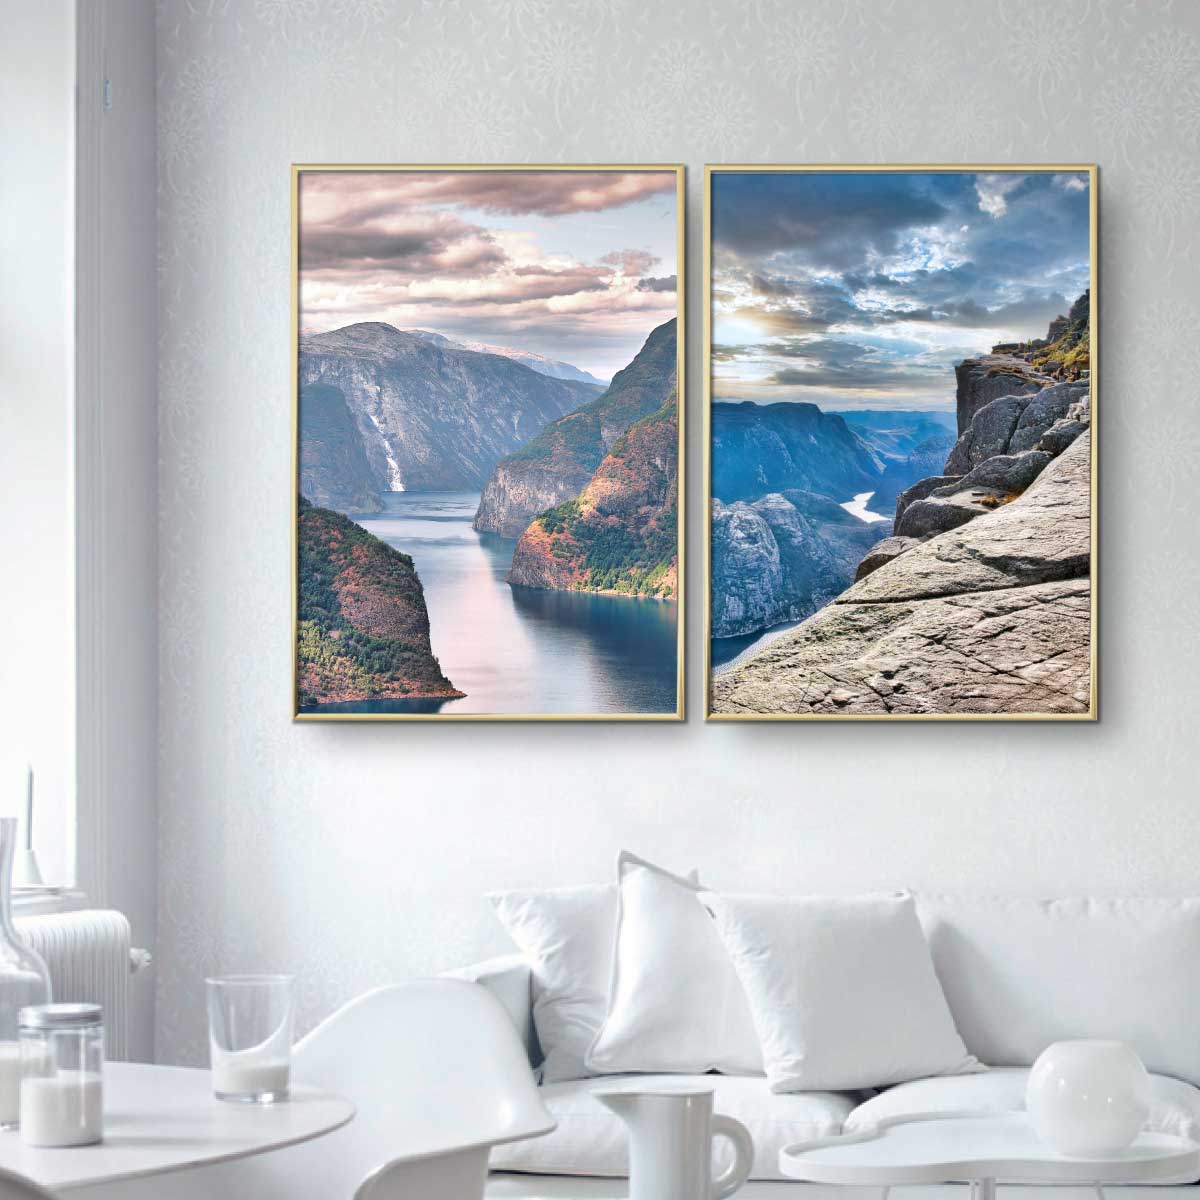 To plakater med norske naturbilleder af Aurland Fjorden og Prædikestoeln